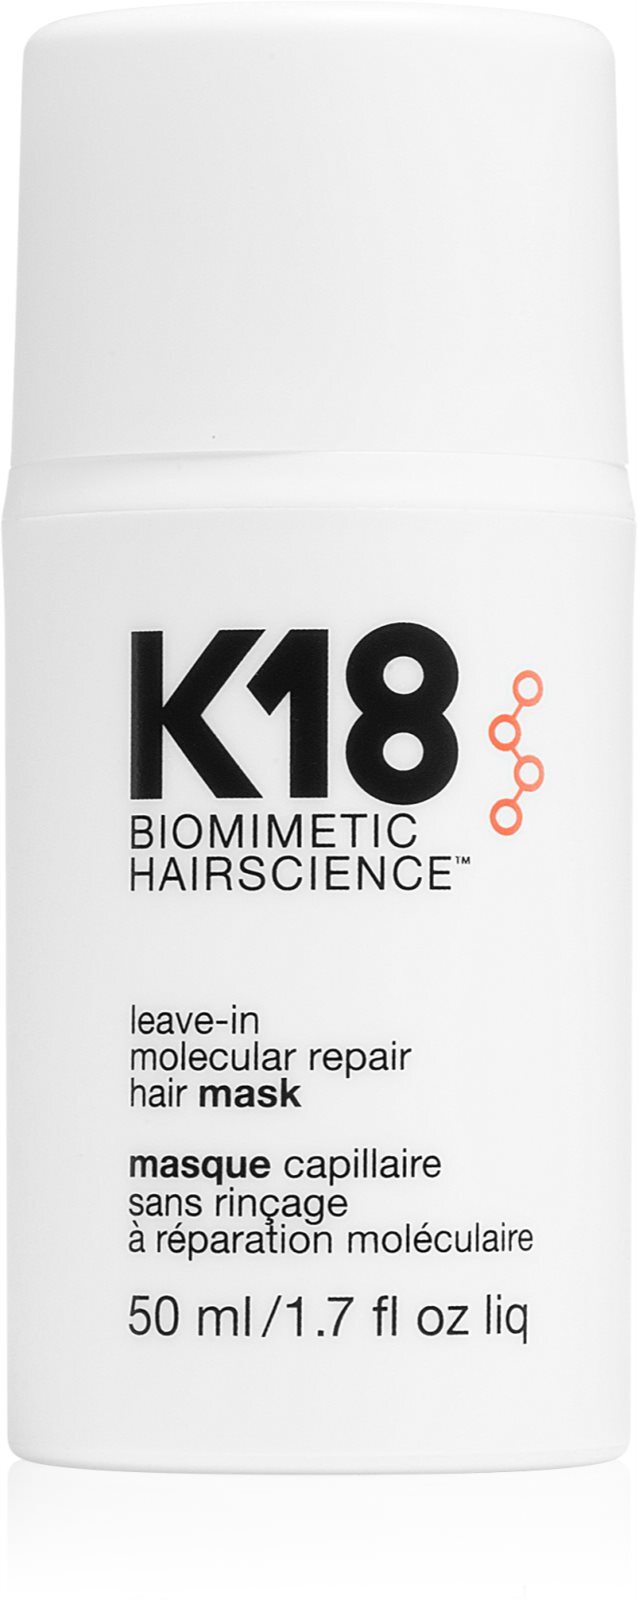 Маска для волос молекулярное восстановление. Маска к18 для волос. Treatment - для молекулярного восстановления волос.